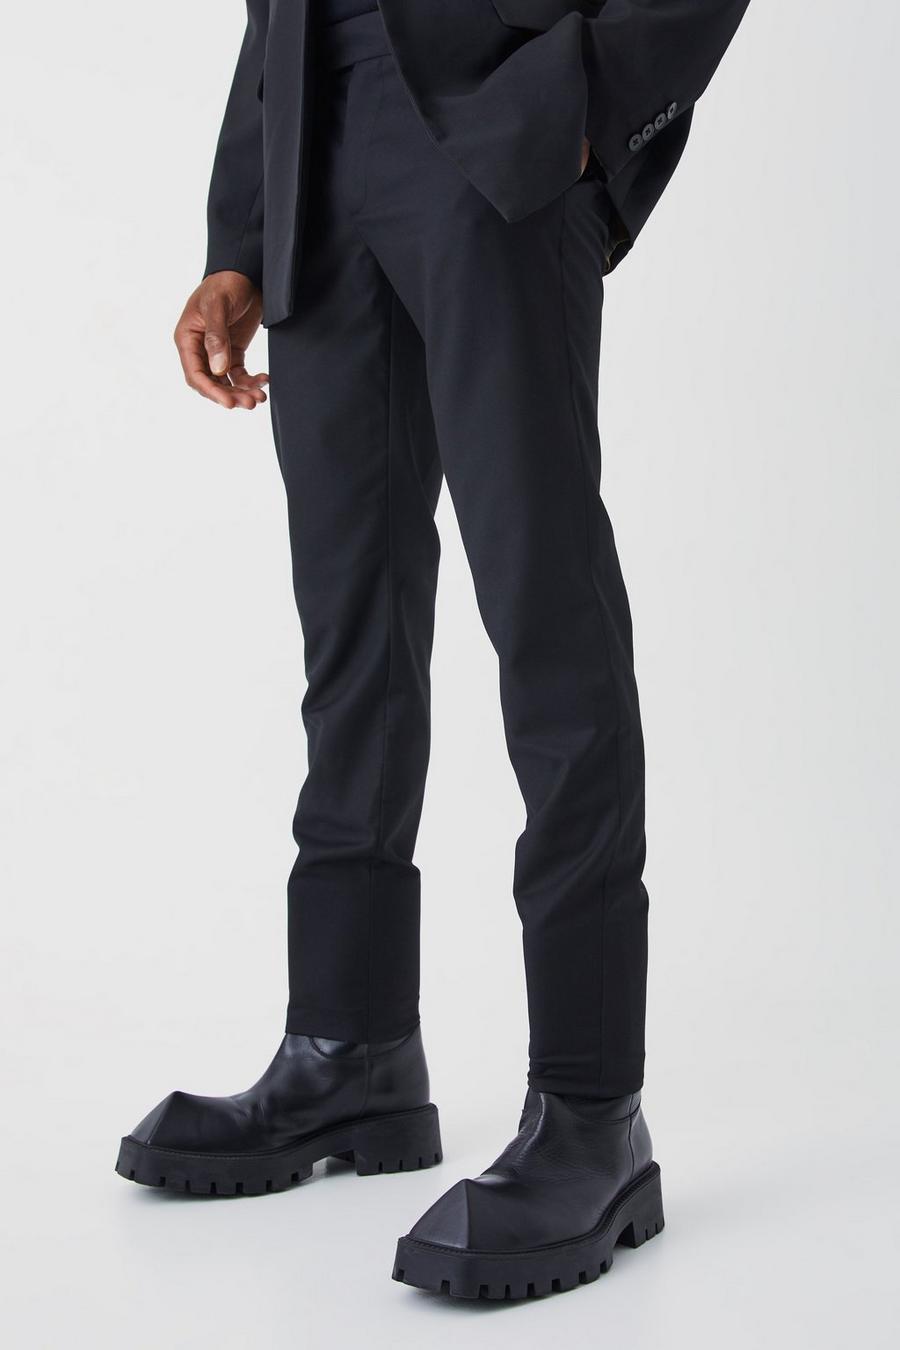 Men's Suit Trousers | Men's Black Suit Trousers | boohoo UK